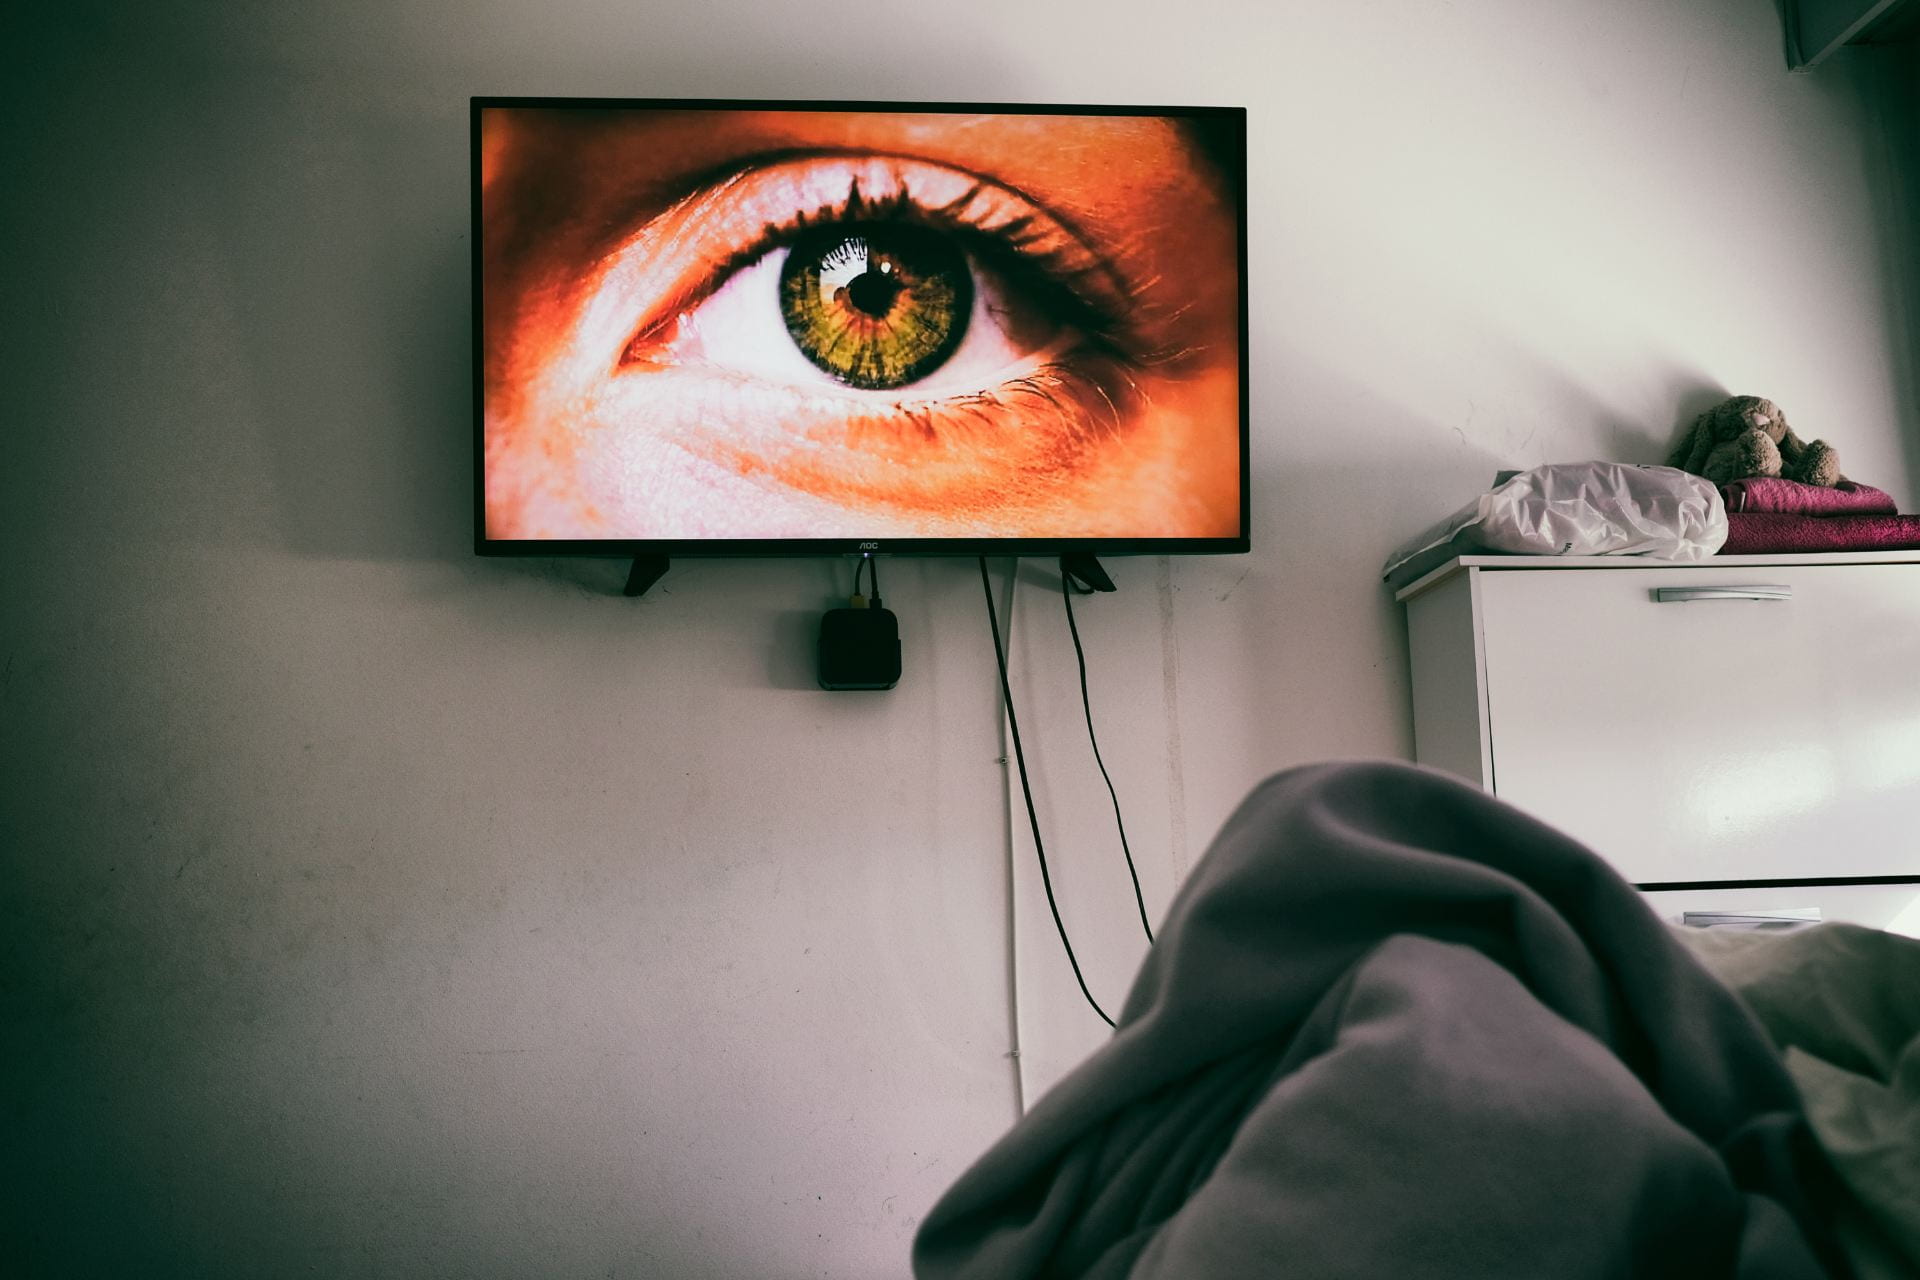 portrait of an eye on a TV screen